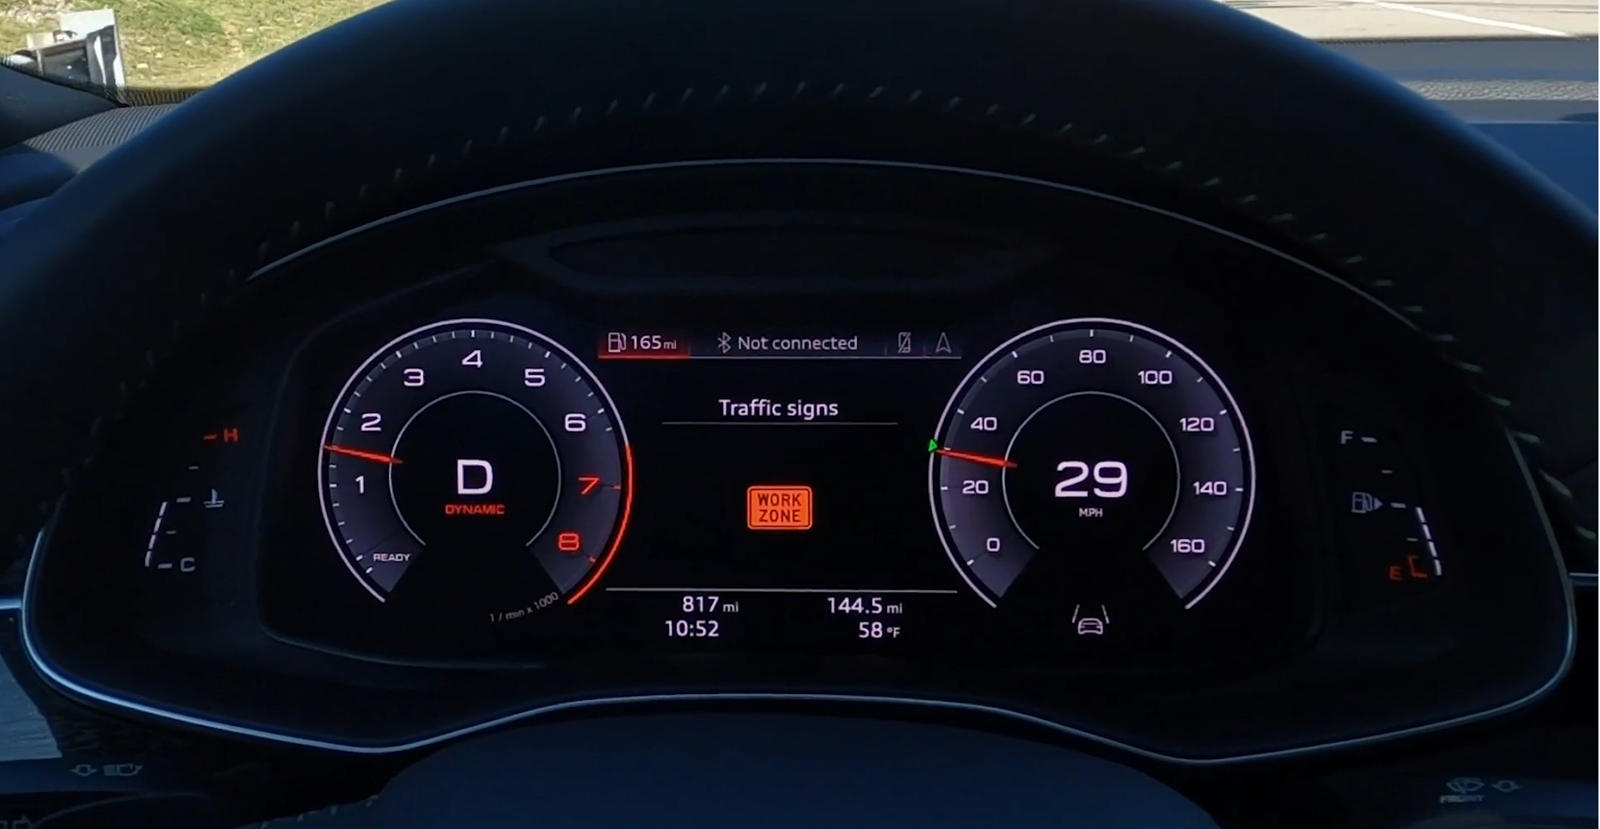 У Audi есть новая технология, называемая C-V2X, которую можно использовать для самых разных целей. Немецкий автопроизводитель недавно продемонстрировал новую функцию C-V2X, которая предупреждает водителей о приближающихся строительных зонах, обеспечи